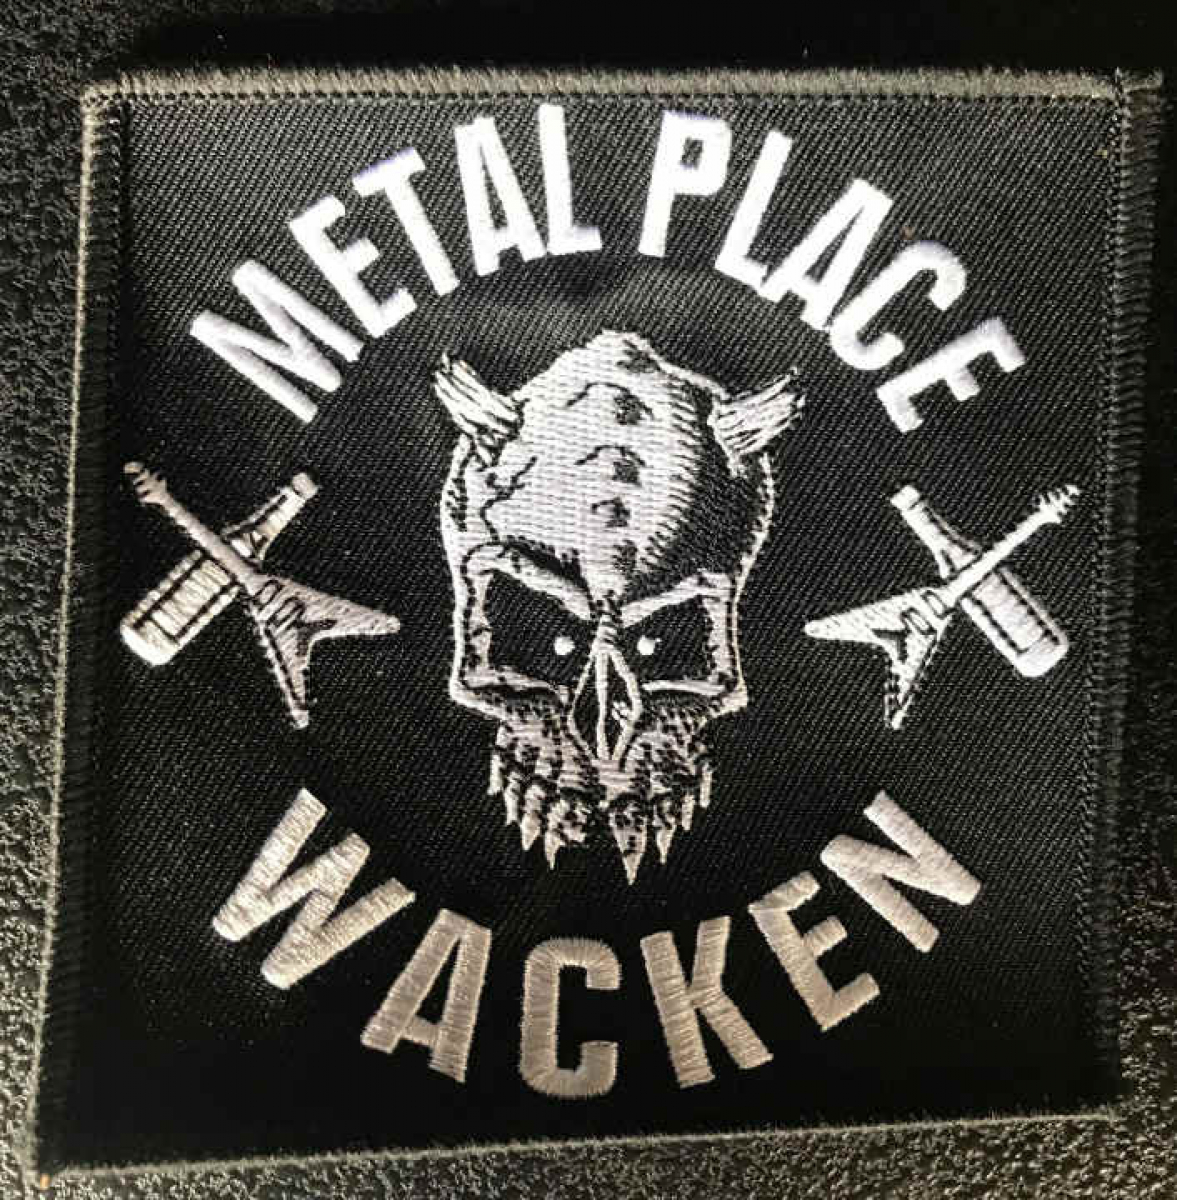 Metal Place Wacken Patch, gestickt 10x10cm